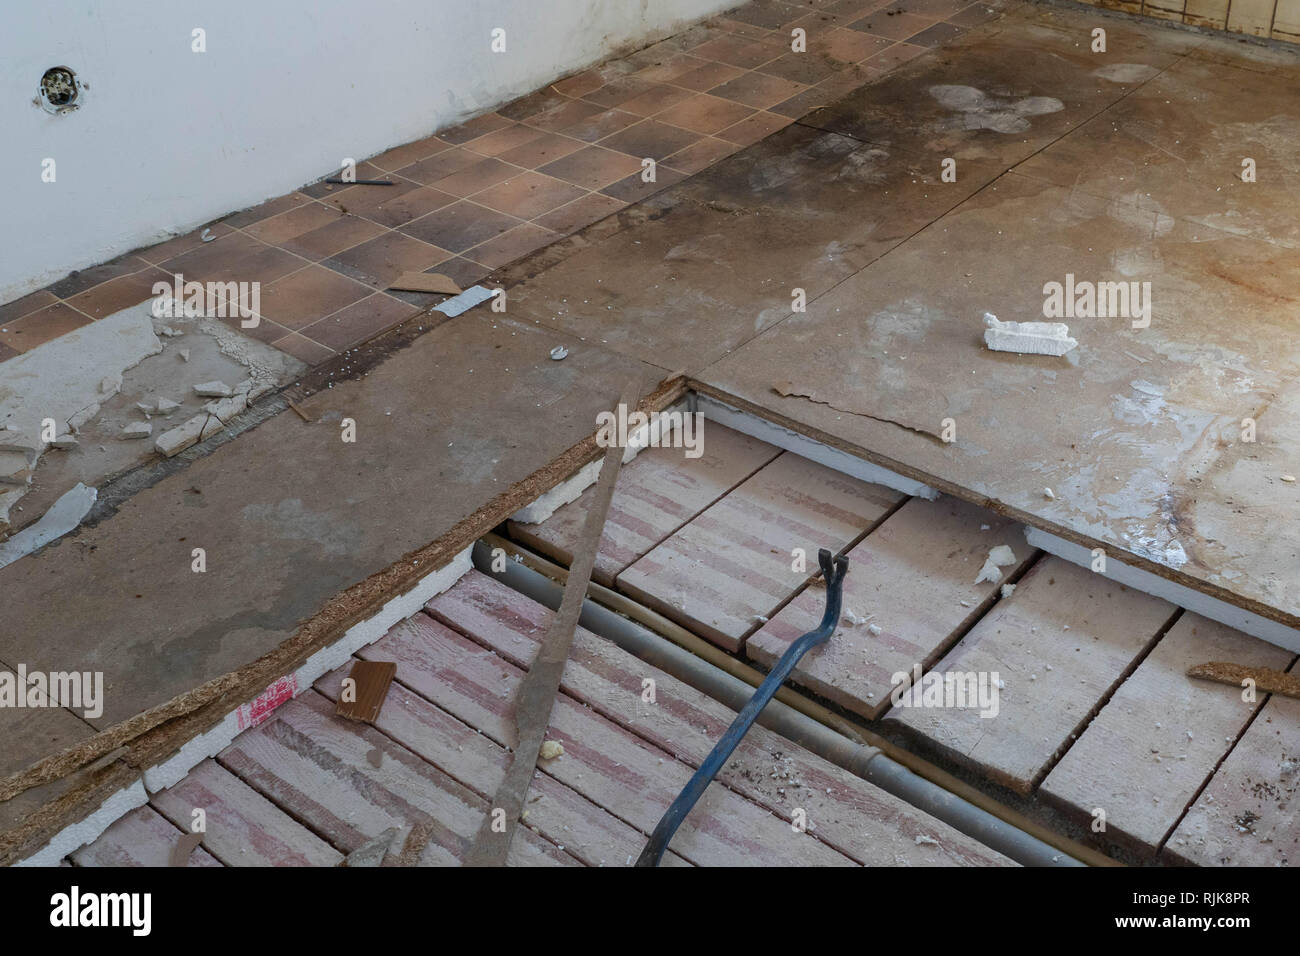 Styropor Paneelen aus dem Boden entfernen Stockfotografie - Alamy